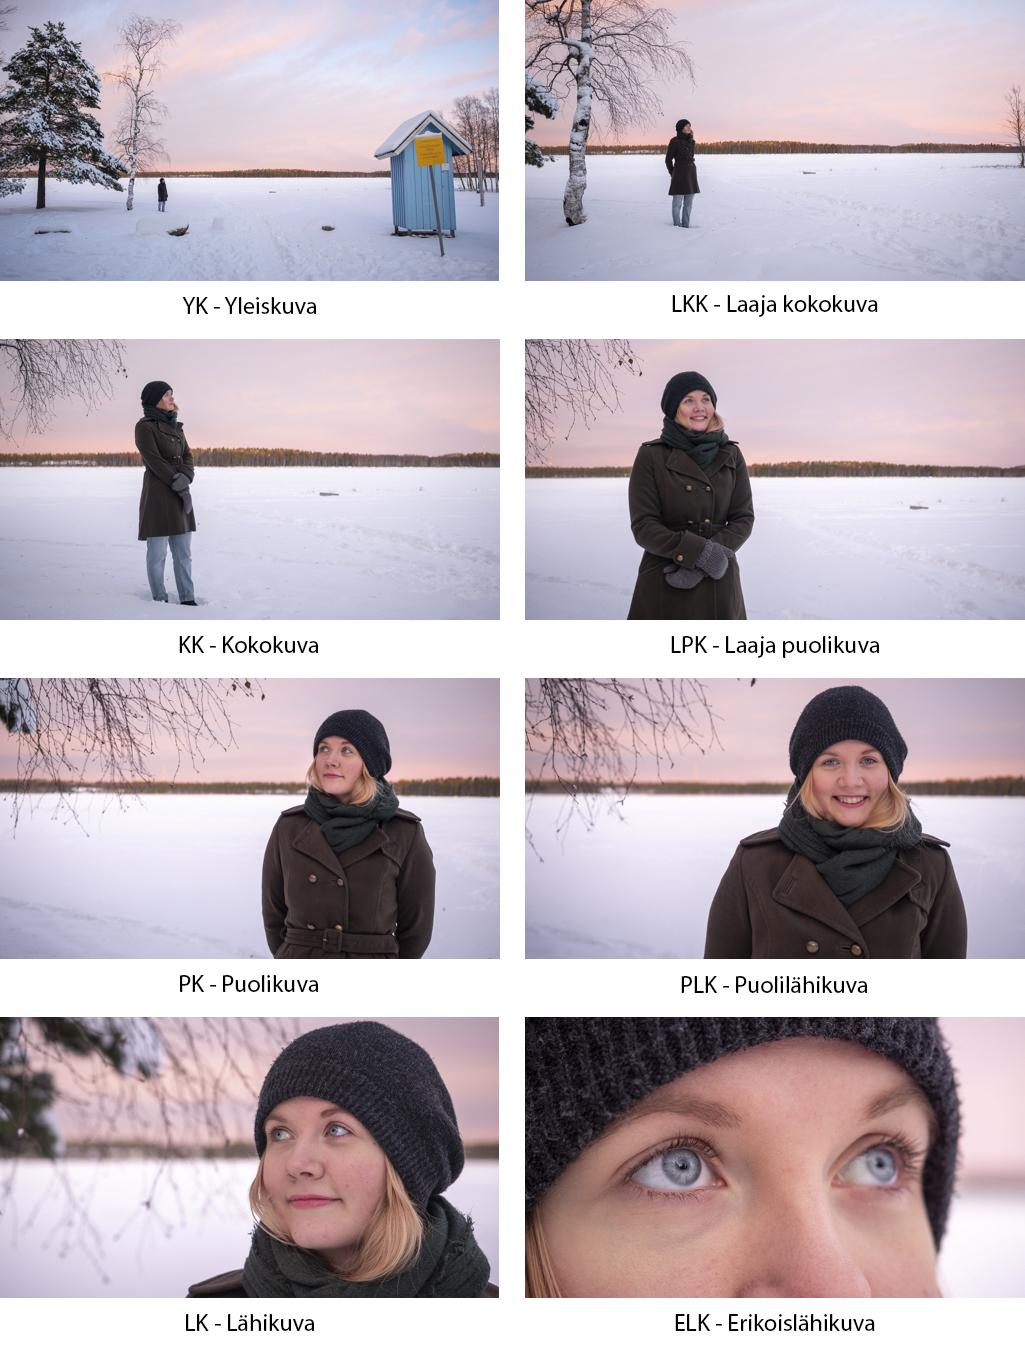 kahdeksan-kuvakoon-esittely-nainen-talvisessa-maisemassa-kuvattu-eri-kuvakoissa